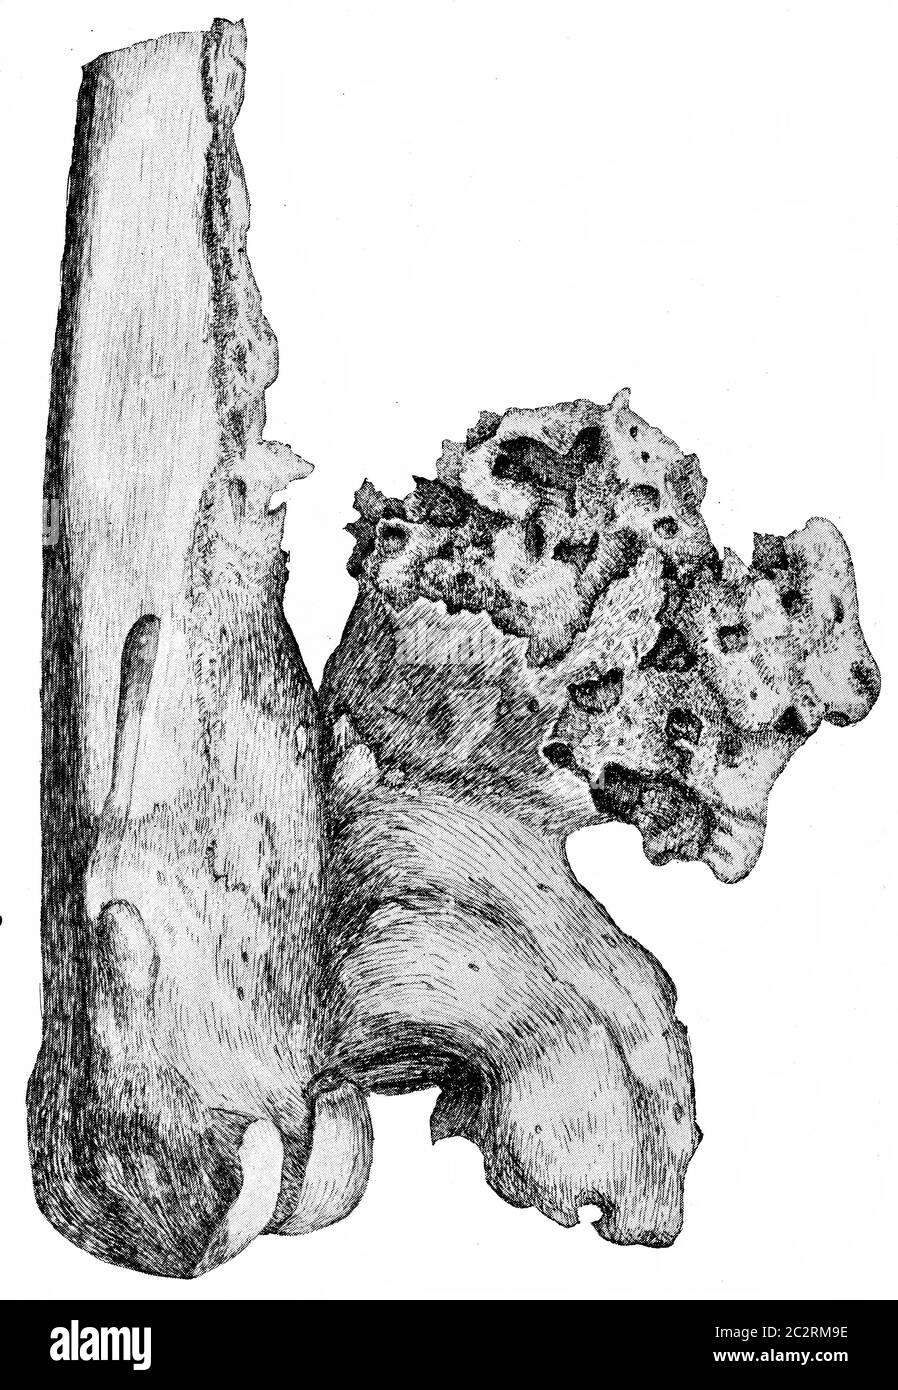 Osteofiti sull'aspetto popliteo dell'estremità inferiore del femore, illustrazione vintage incisa. Foto Stock